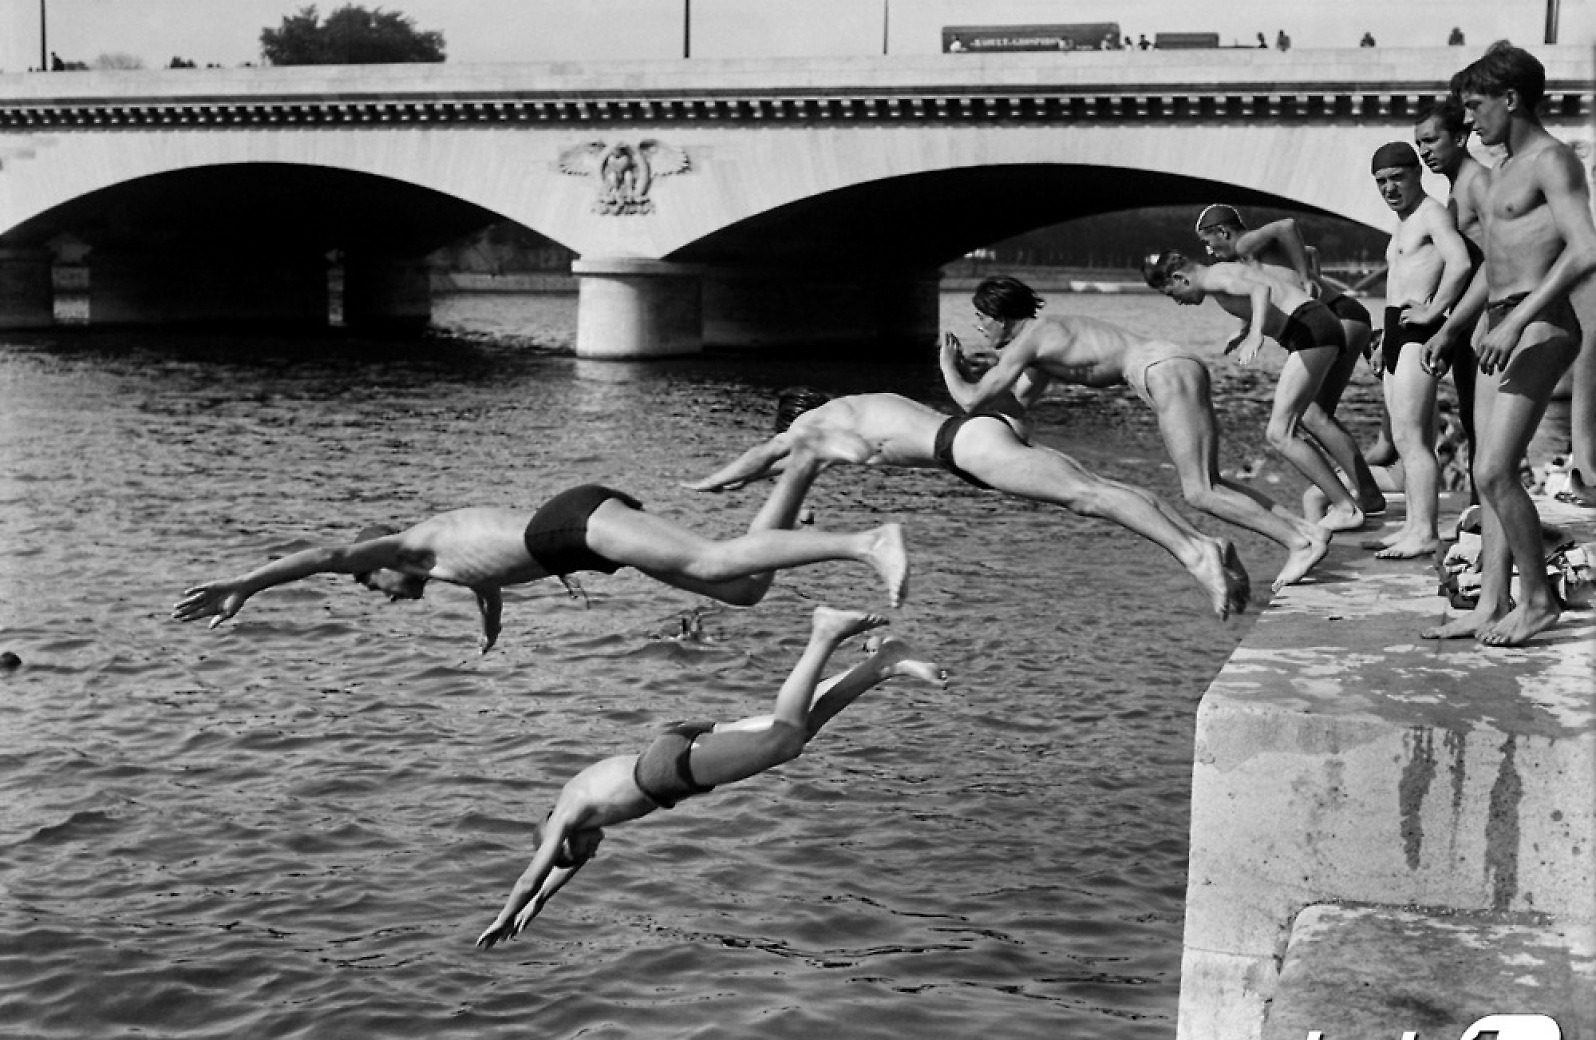 [포토] 1946년 프랑스 파리 센 강에서 다이빙하는 사람들